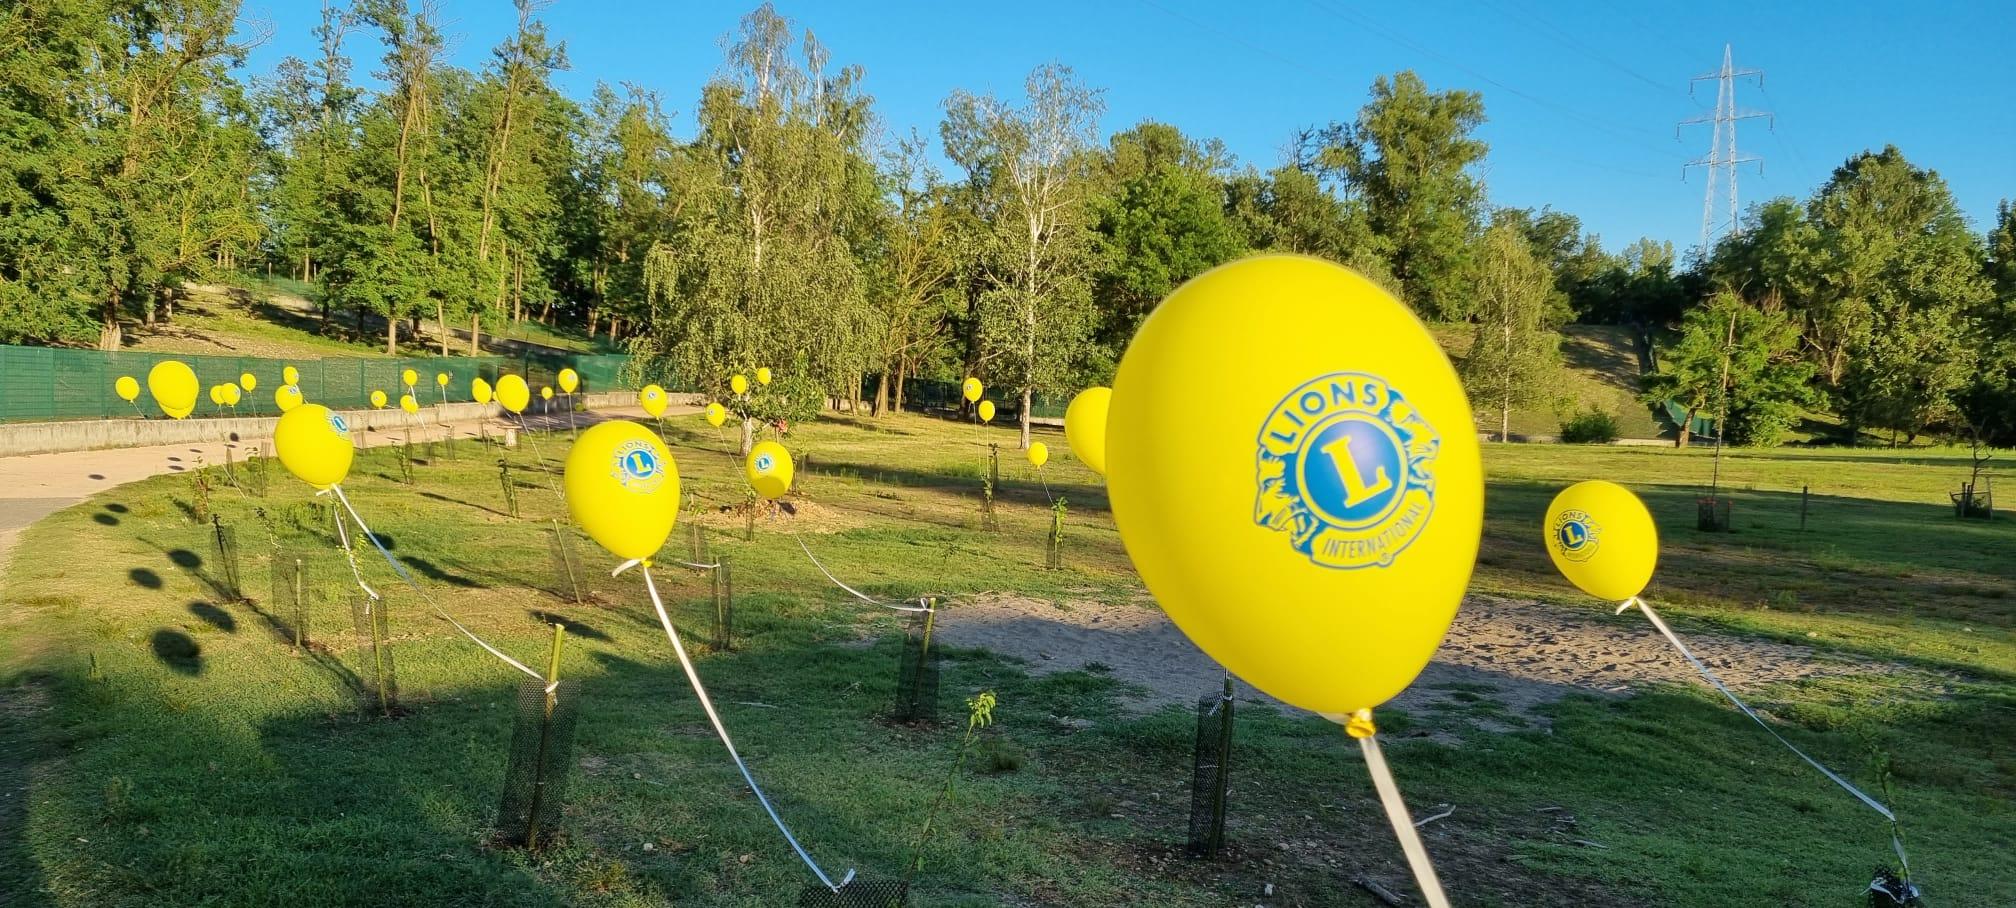 Nasce il Lions club Basso Varesotto: “Solidarietà e lustro per Gerenzano”